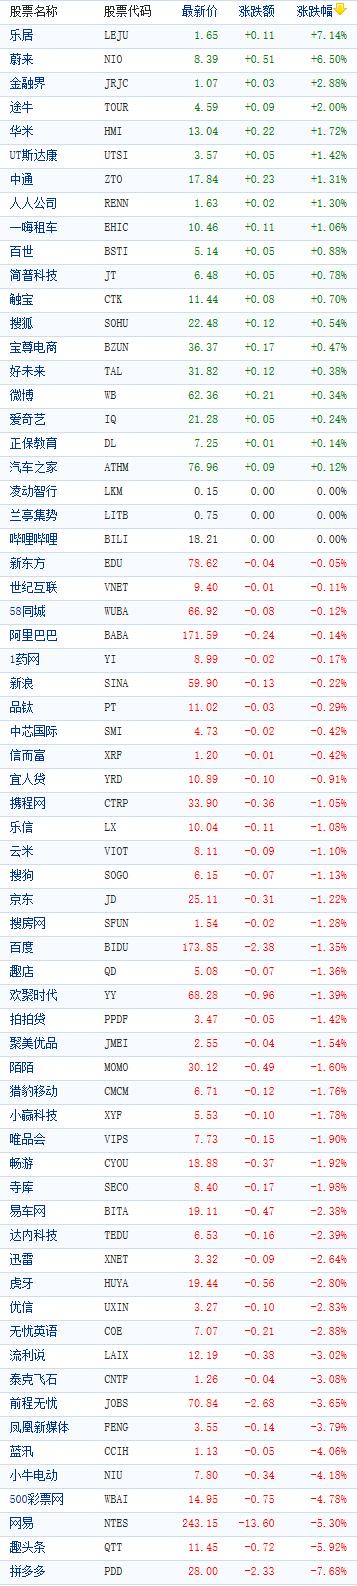 中國概念股週三收盤漲跌互現 蔚來漲逾6% 財經 第1張